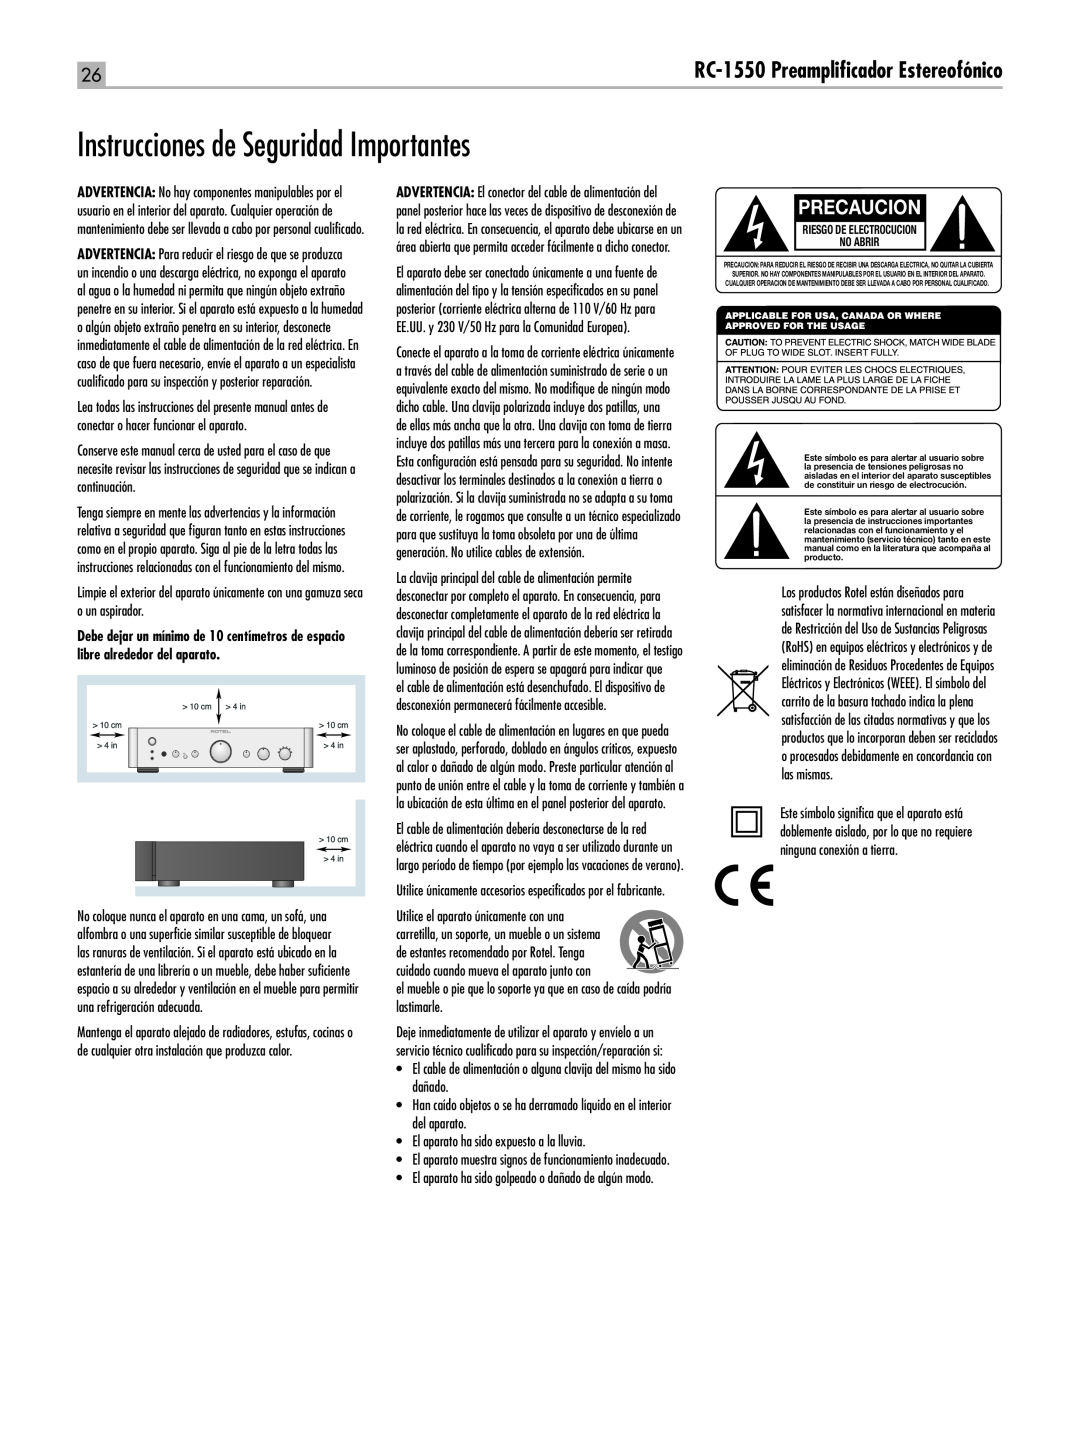 Rotel owner manual Instrucciones de Seguridad Importantes, Precaucion, RC-1550Preamplificador Estereofónico 